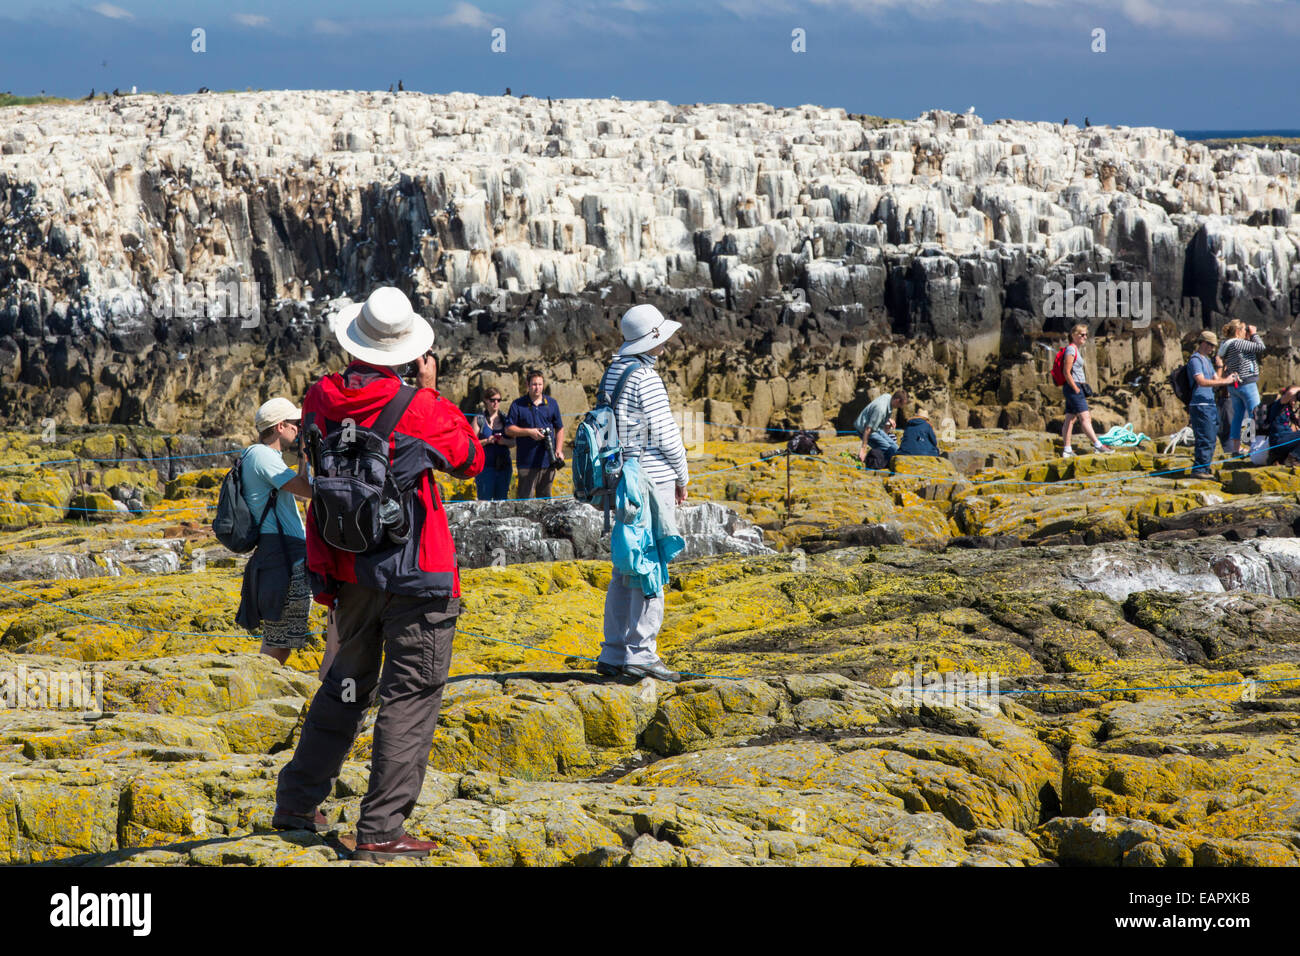 Les touristes sur les îles Farne, Northumberland, Angleterre, parmi les oiseaux marins. Banque D'Images